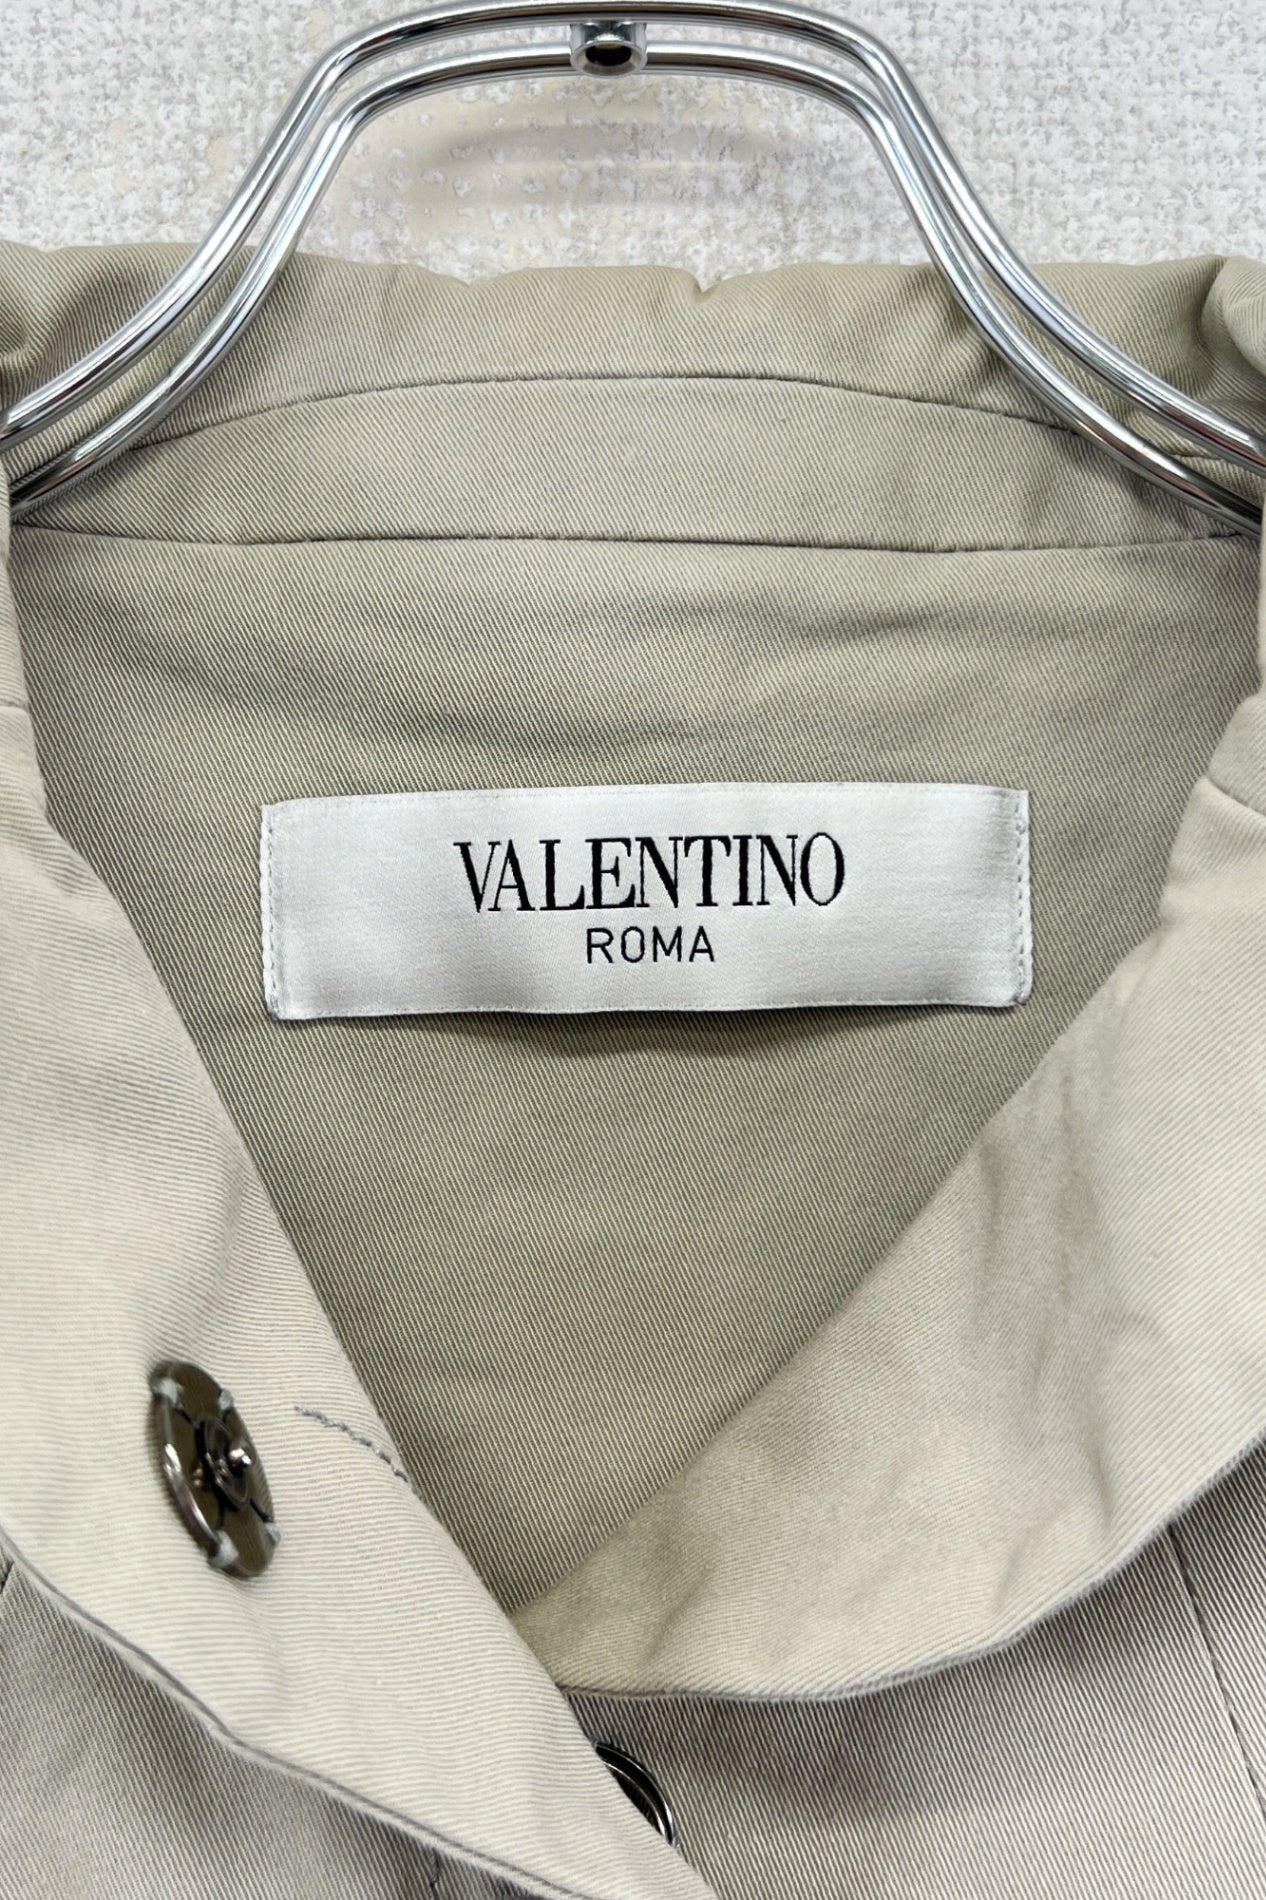 意大利制造 VALENTINO ROMA 夹克